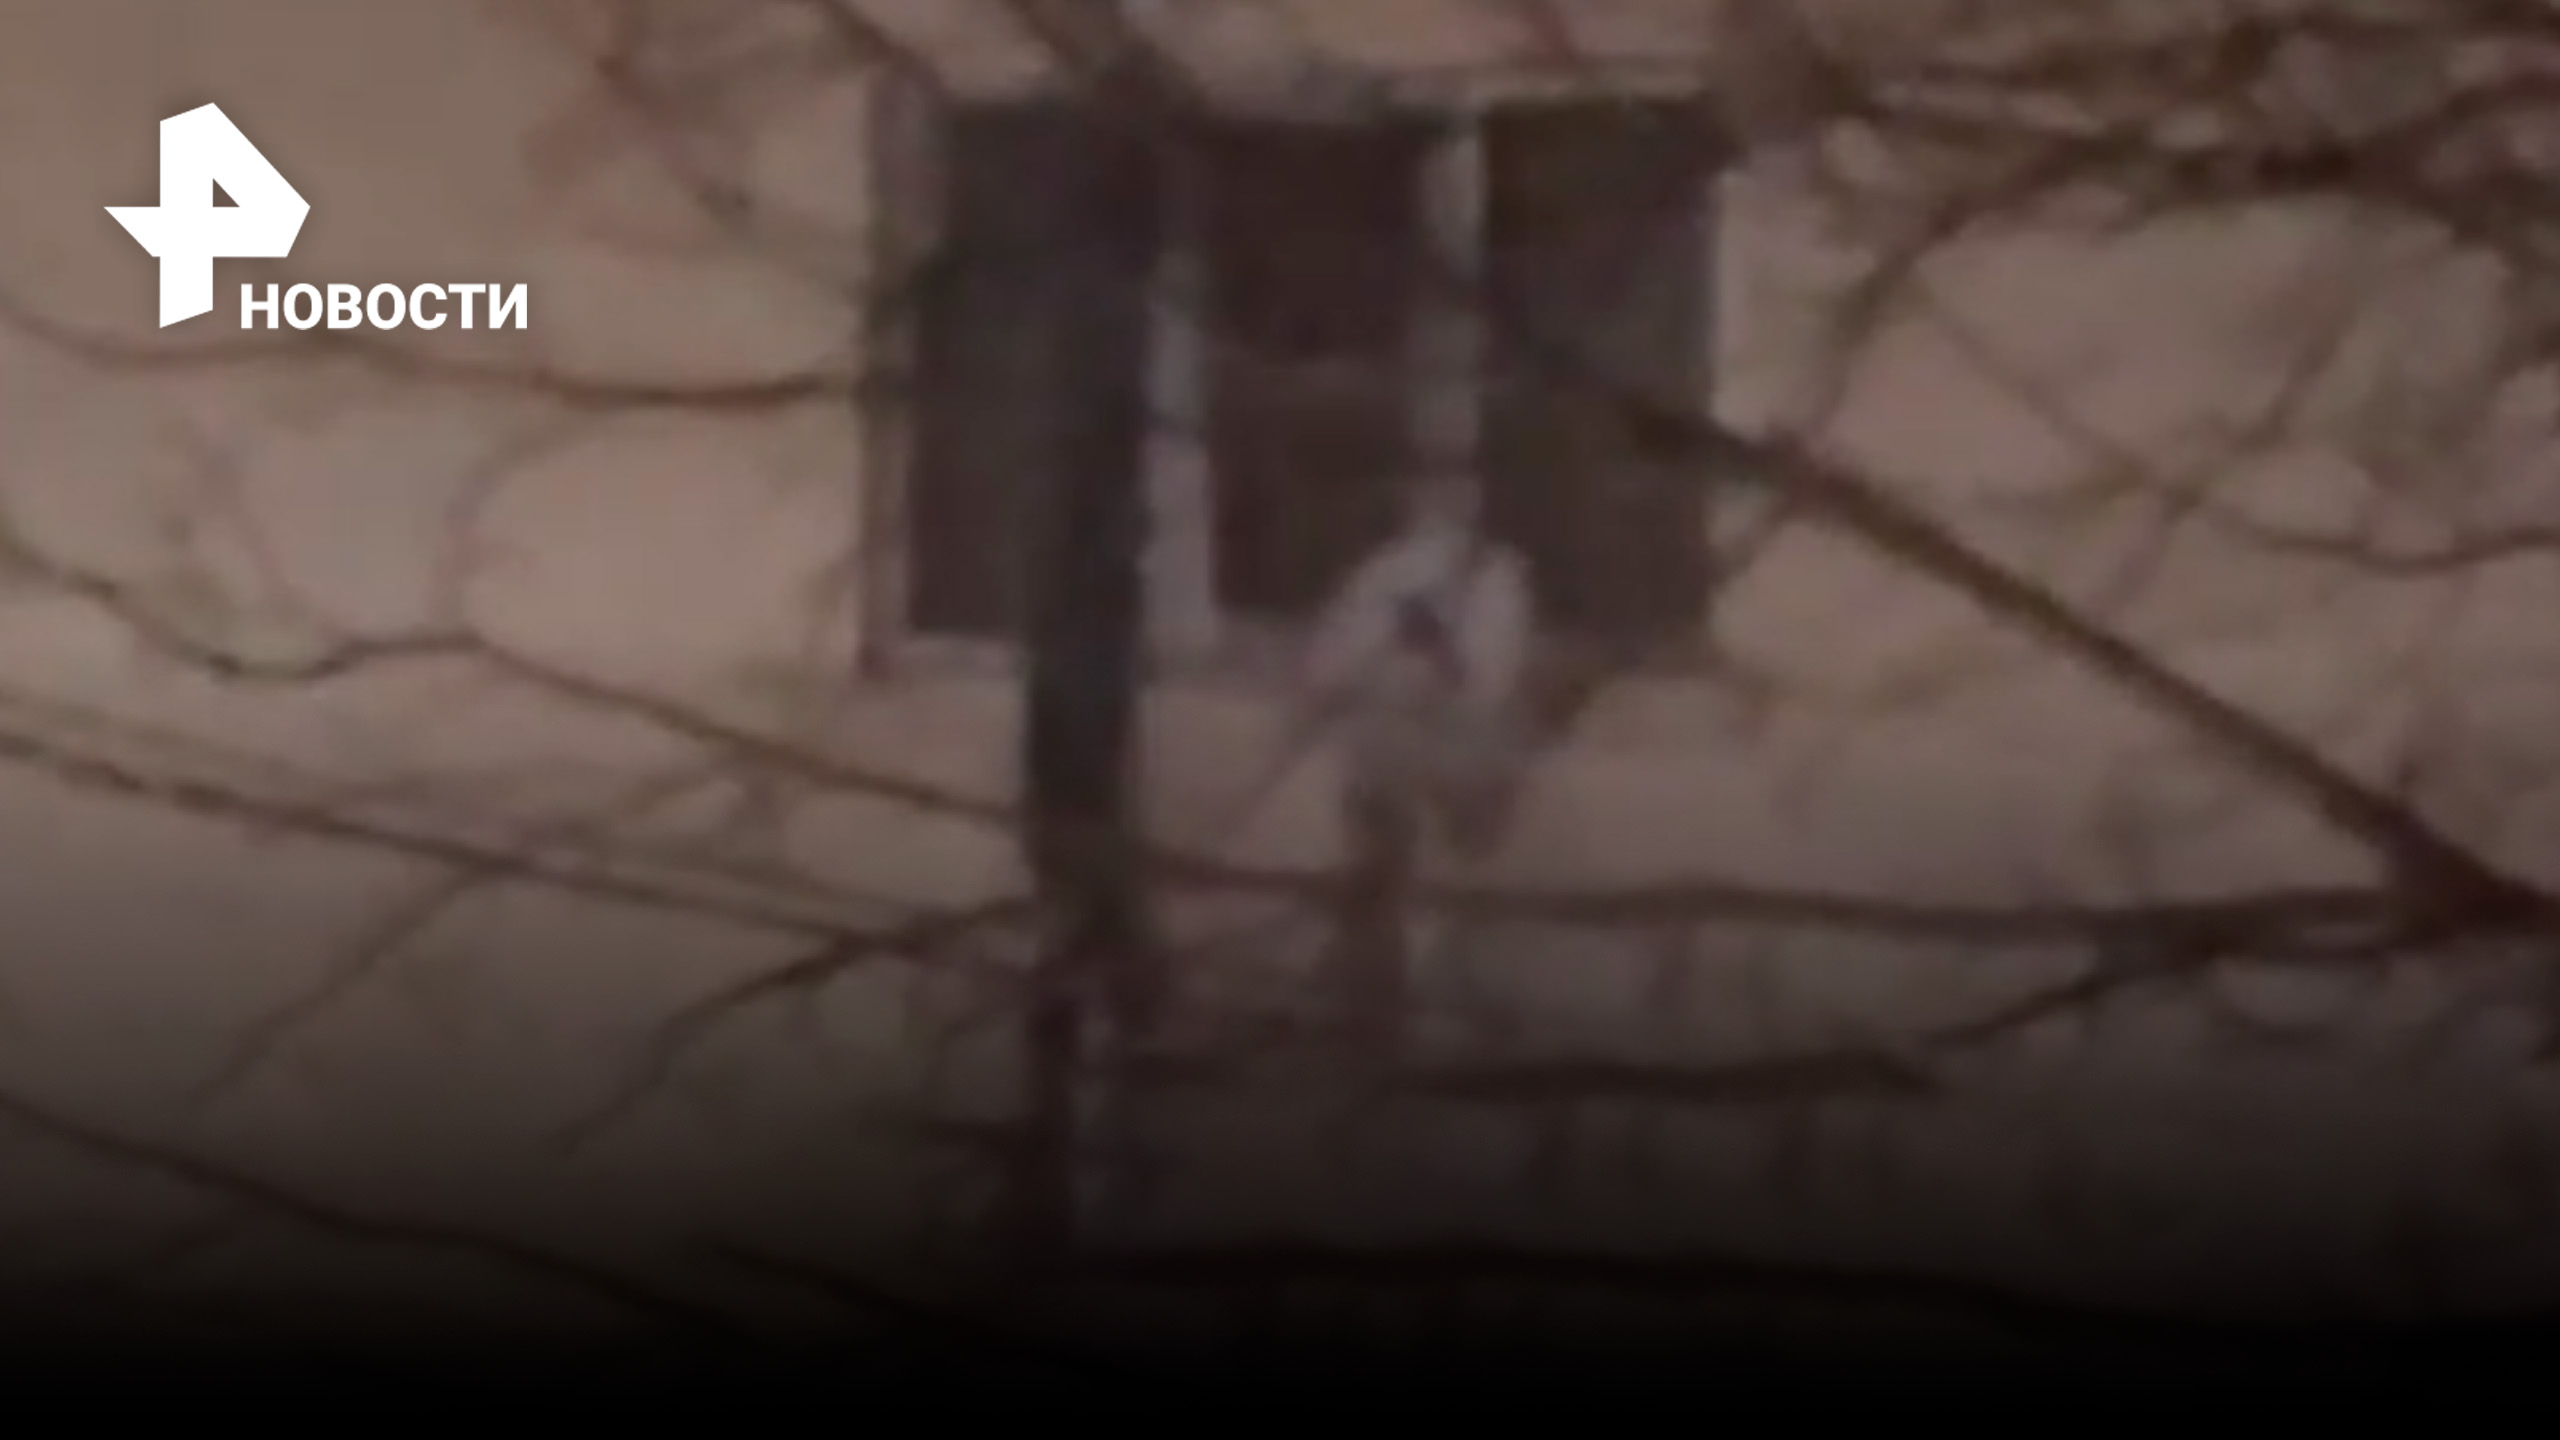 Террористы пытались сбежать из окна по связанным простыням, но им не позволили это сделать бойцы ФСБ